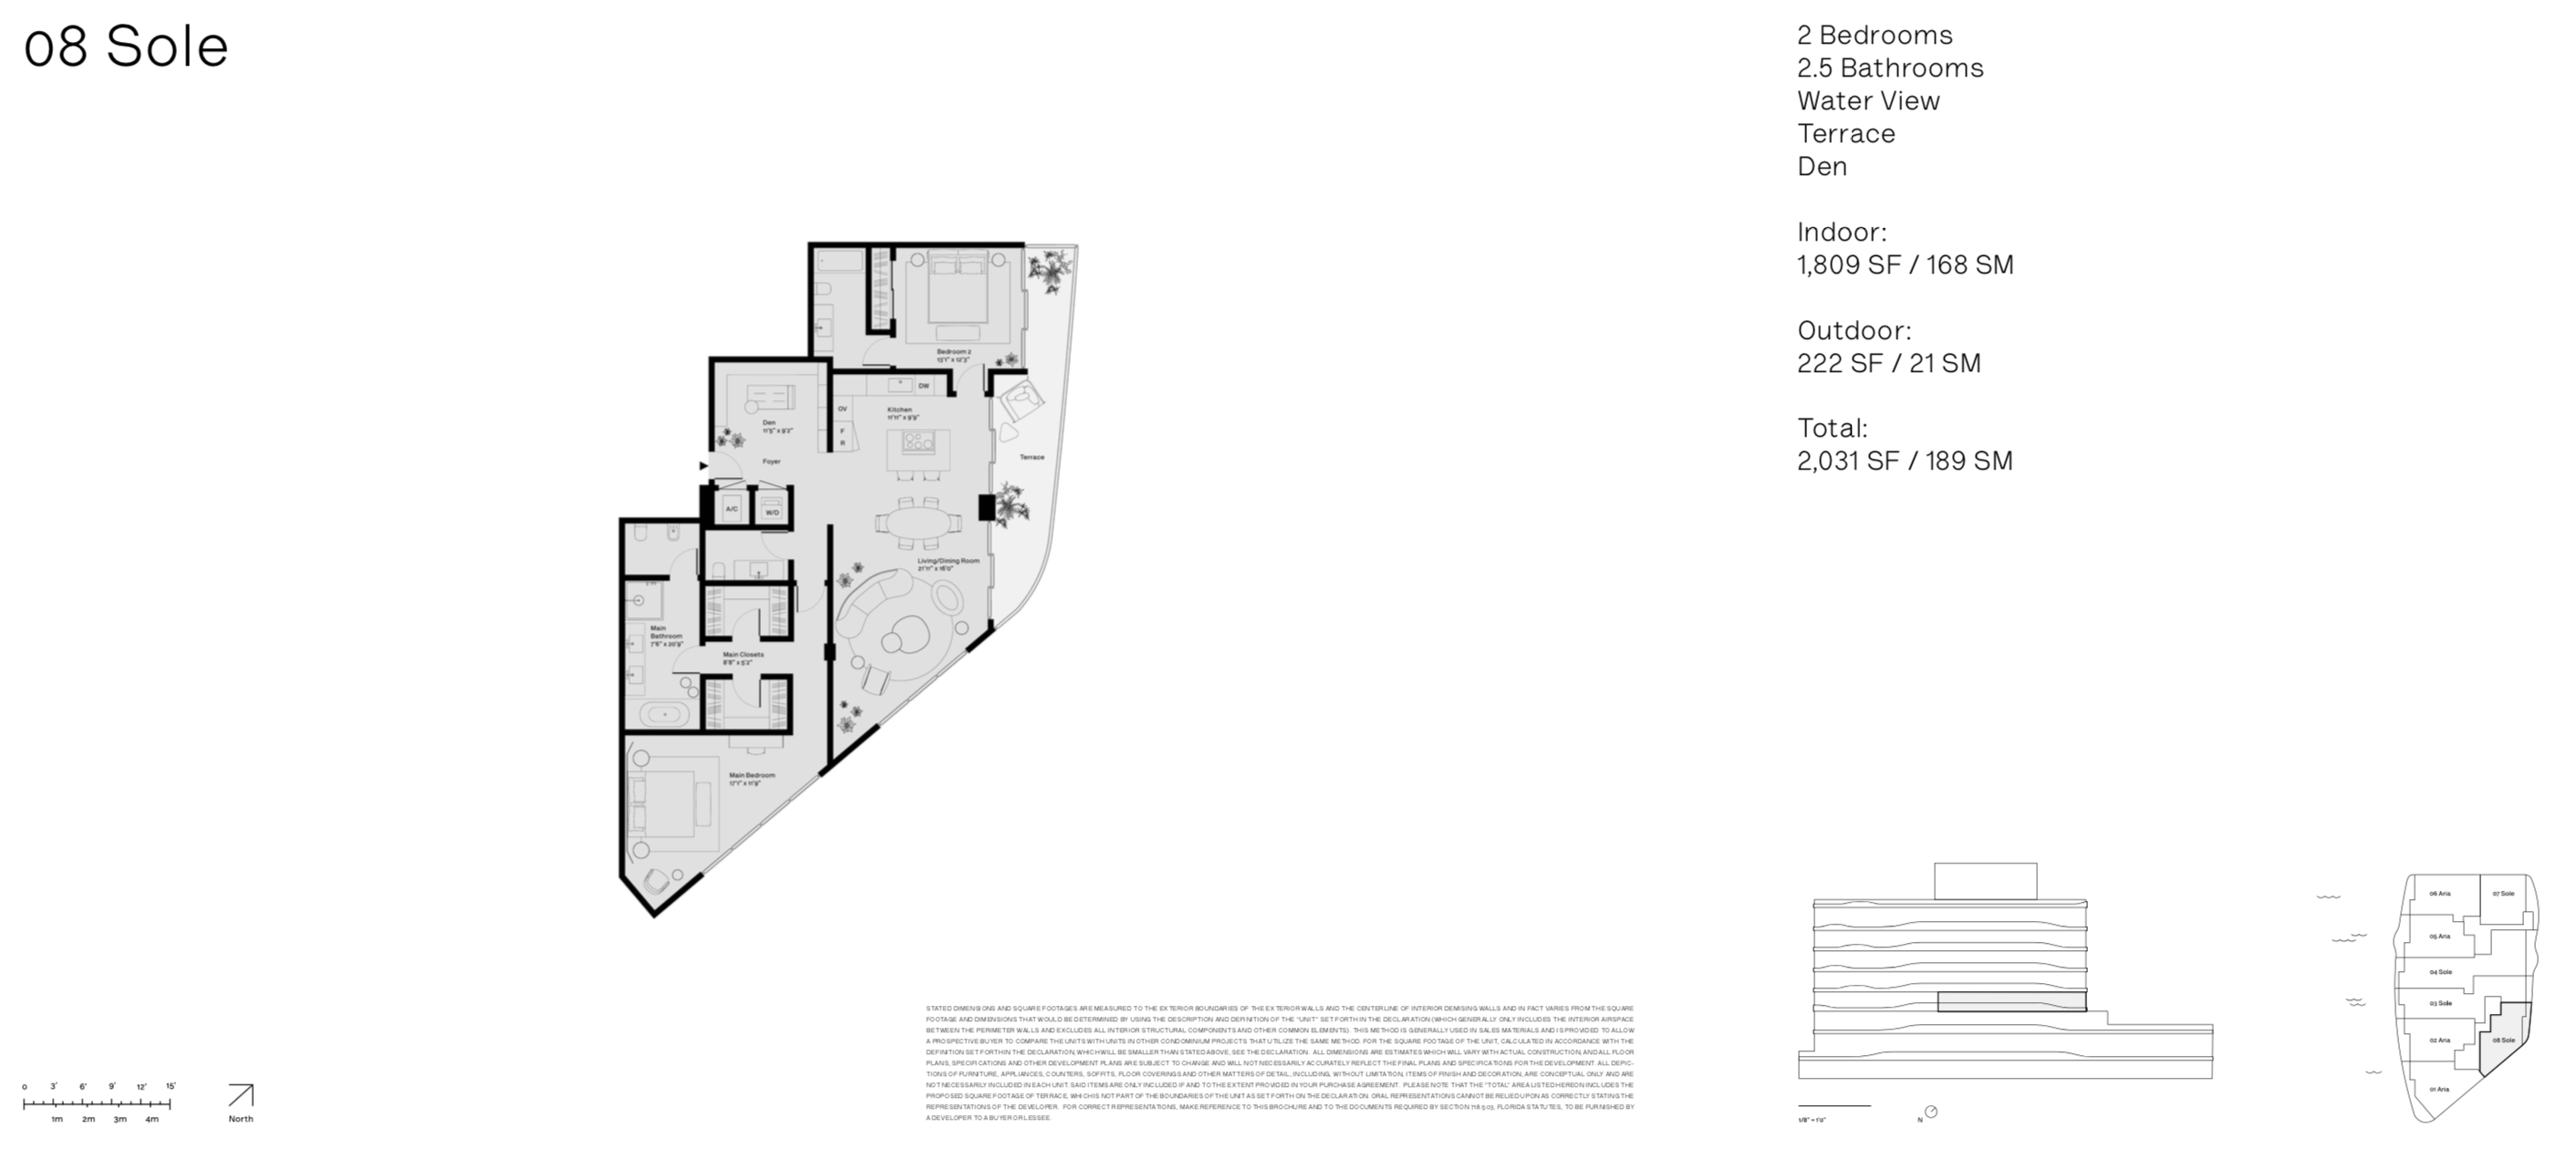 Onda Residences | Sole 08 Line |  Floor 4 | 2 Be + den | 2.5 Ba | Waterviews | 1,809 SF | Terrace 